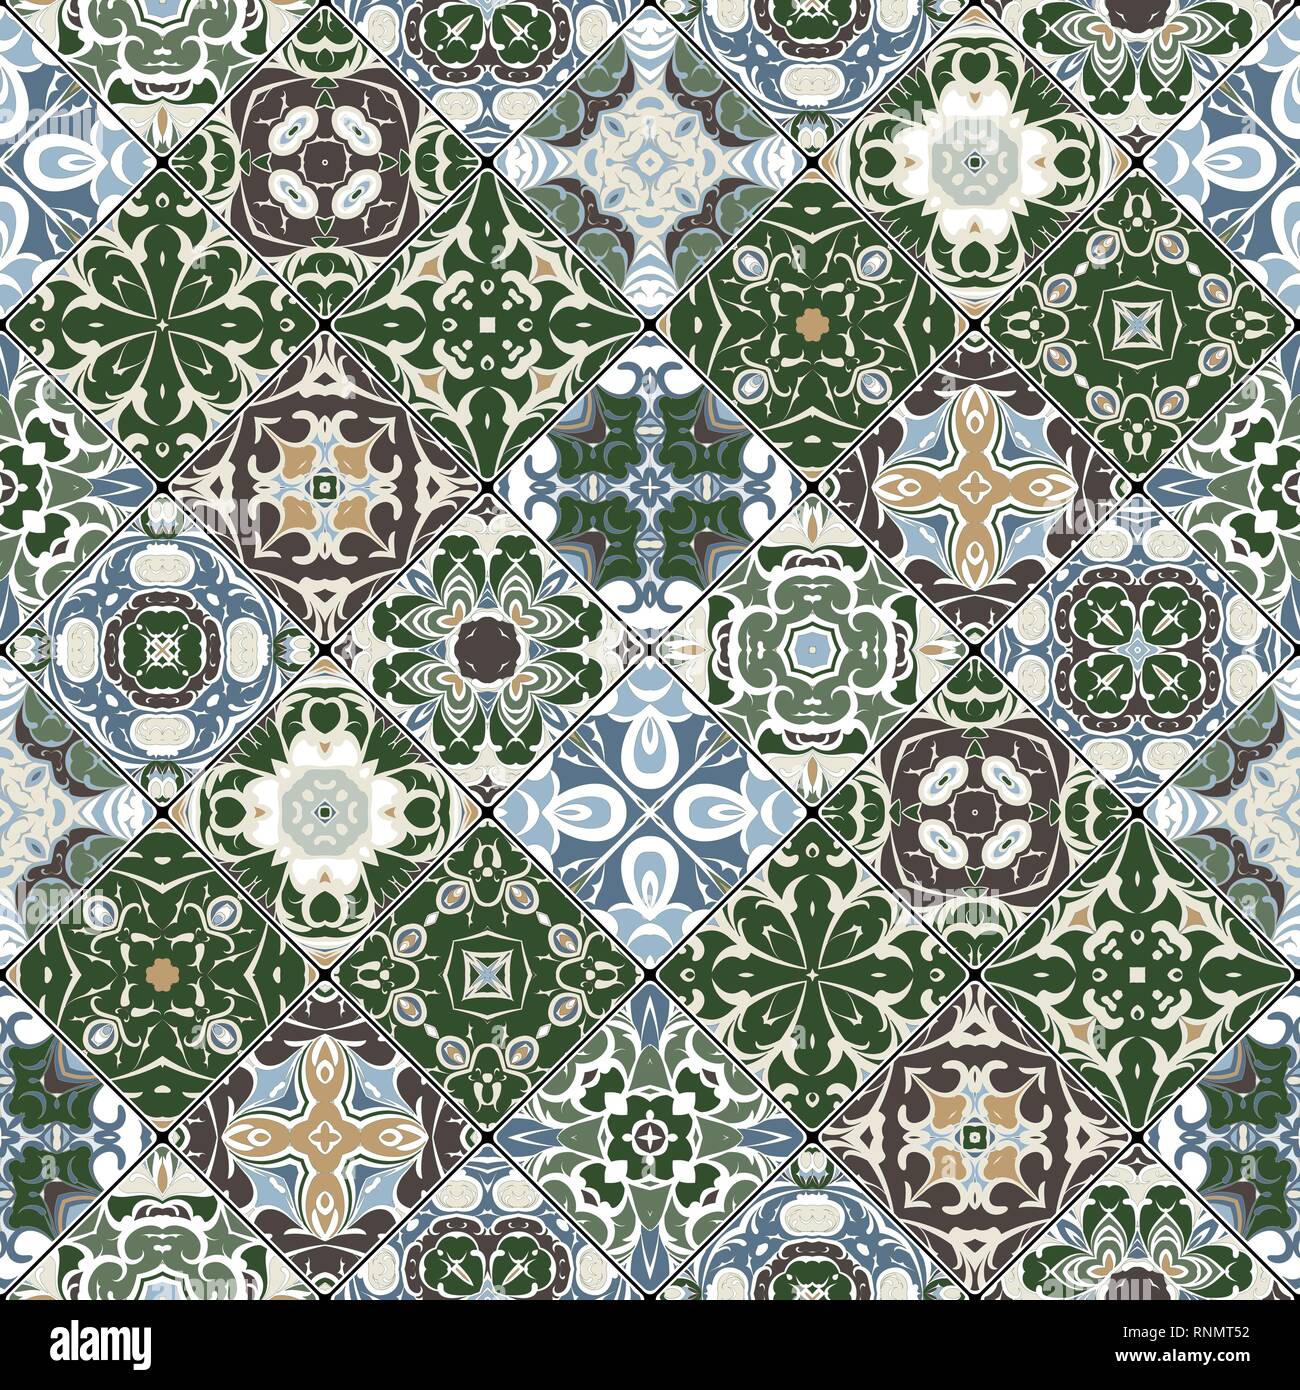 Vert et Bleu motifs abstraits dans l'ensemble de la mosaïque. Morceaux carrés dans un style oriental. Vector illustration. Idéal pour l'impression sur tissu ou papier. Illustration de Vecteur